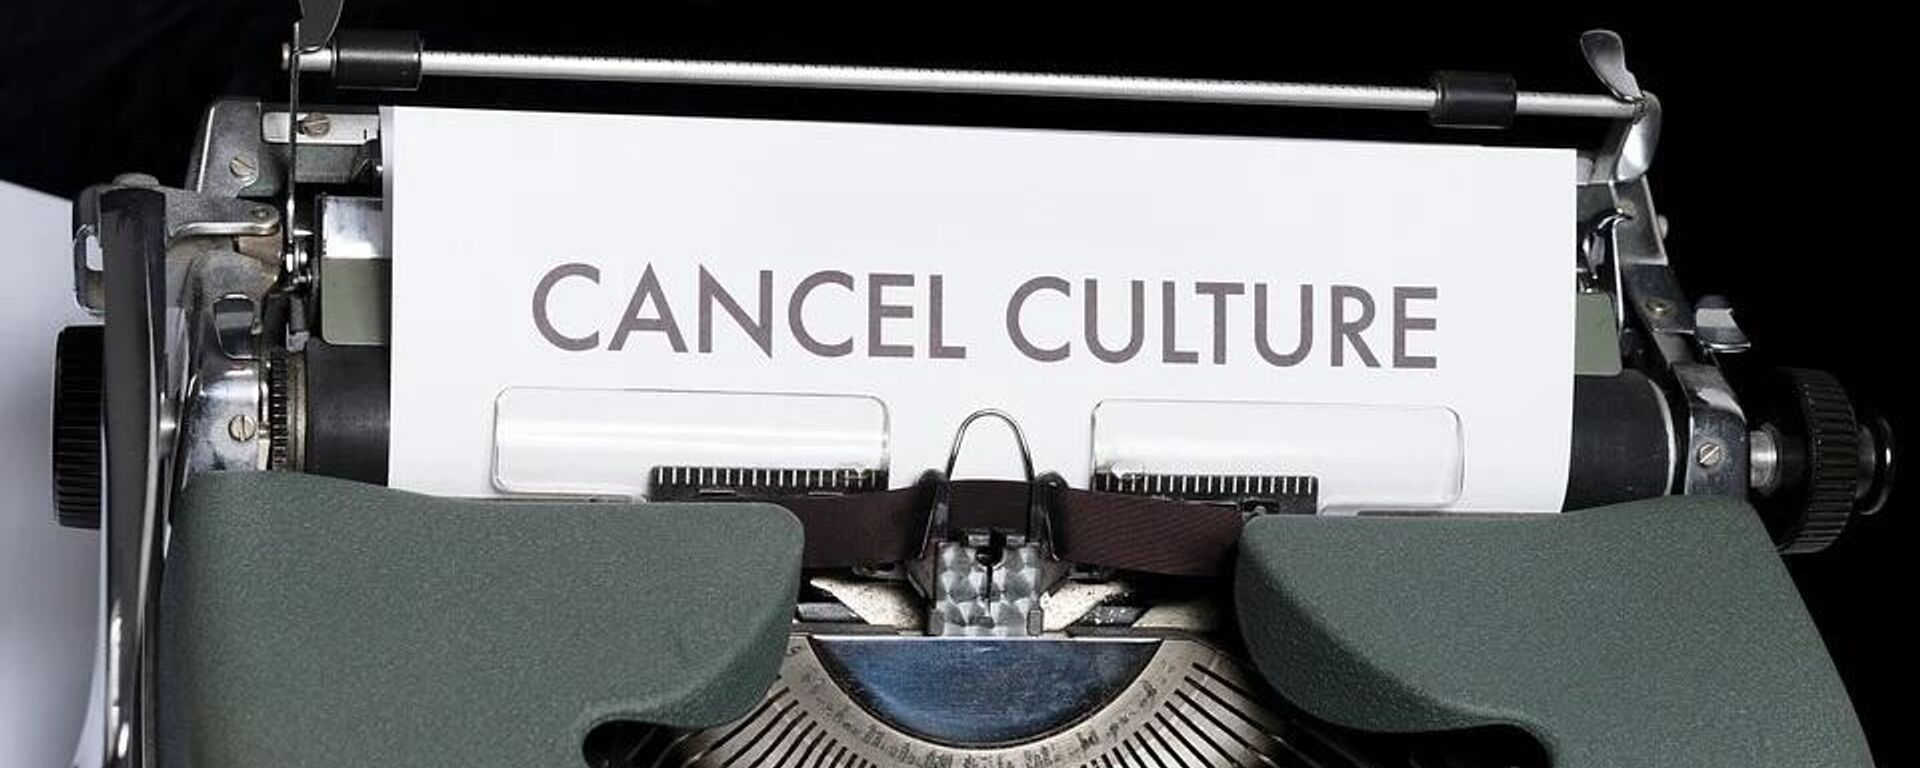 Cancel culture - Sputnik International, 1920, 04.03.2022